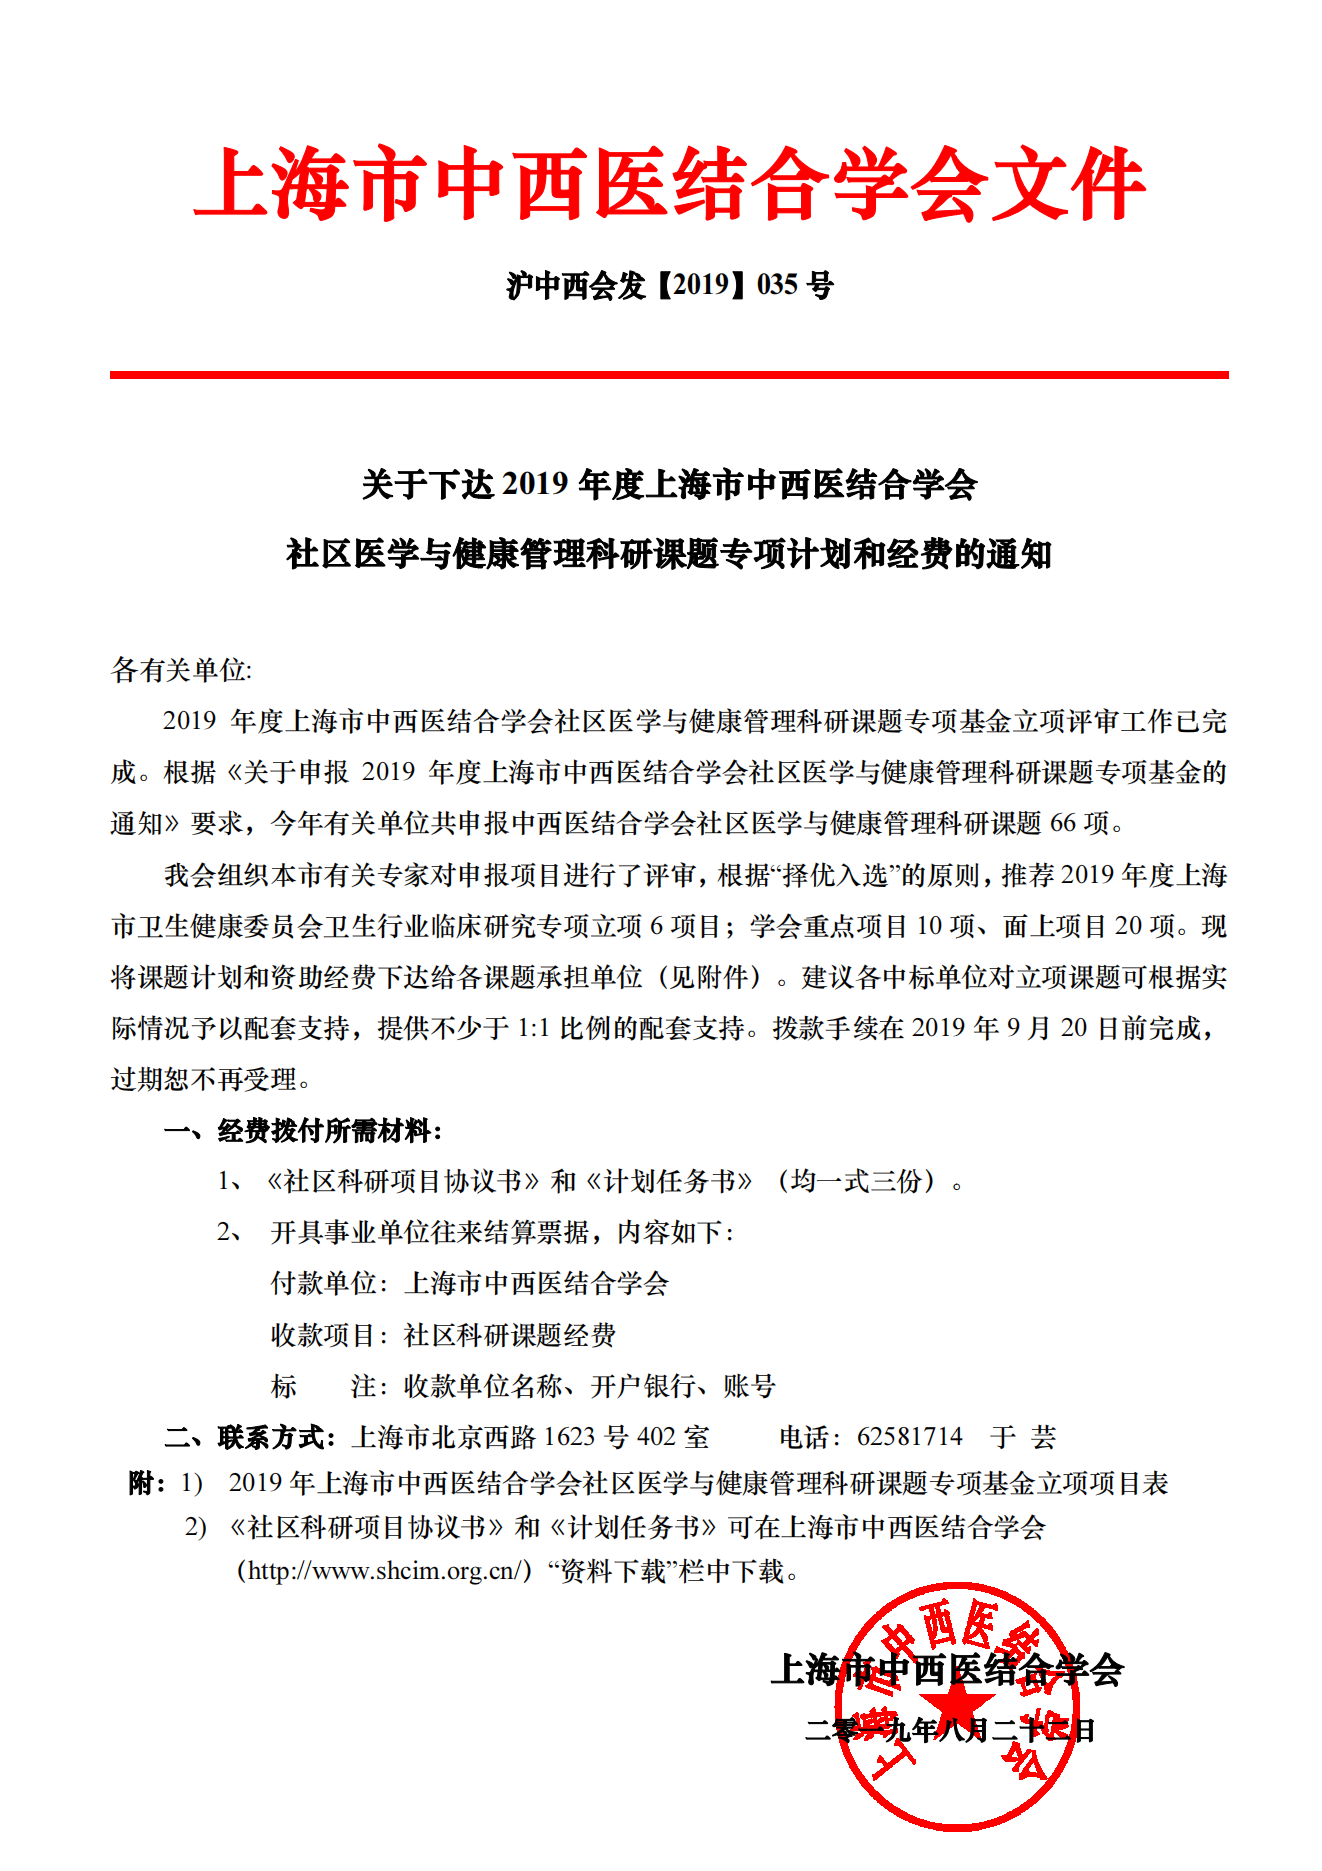 2019年上海市中西医结合学会社区医学与健康管理科研基金立项通知_00.png